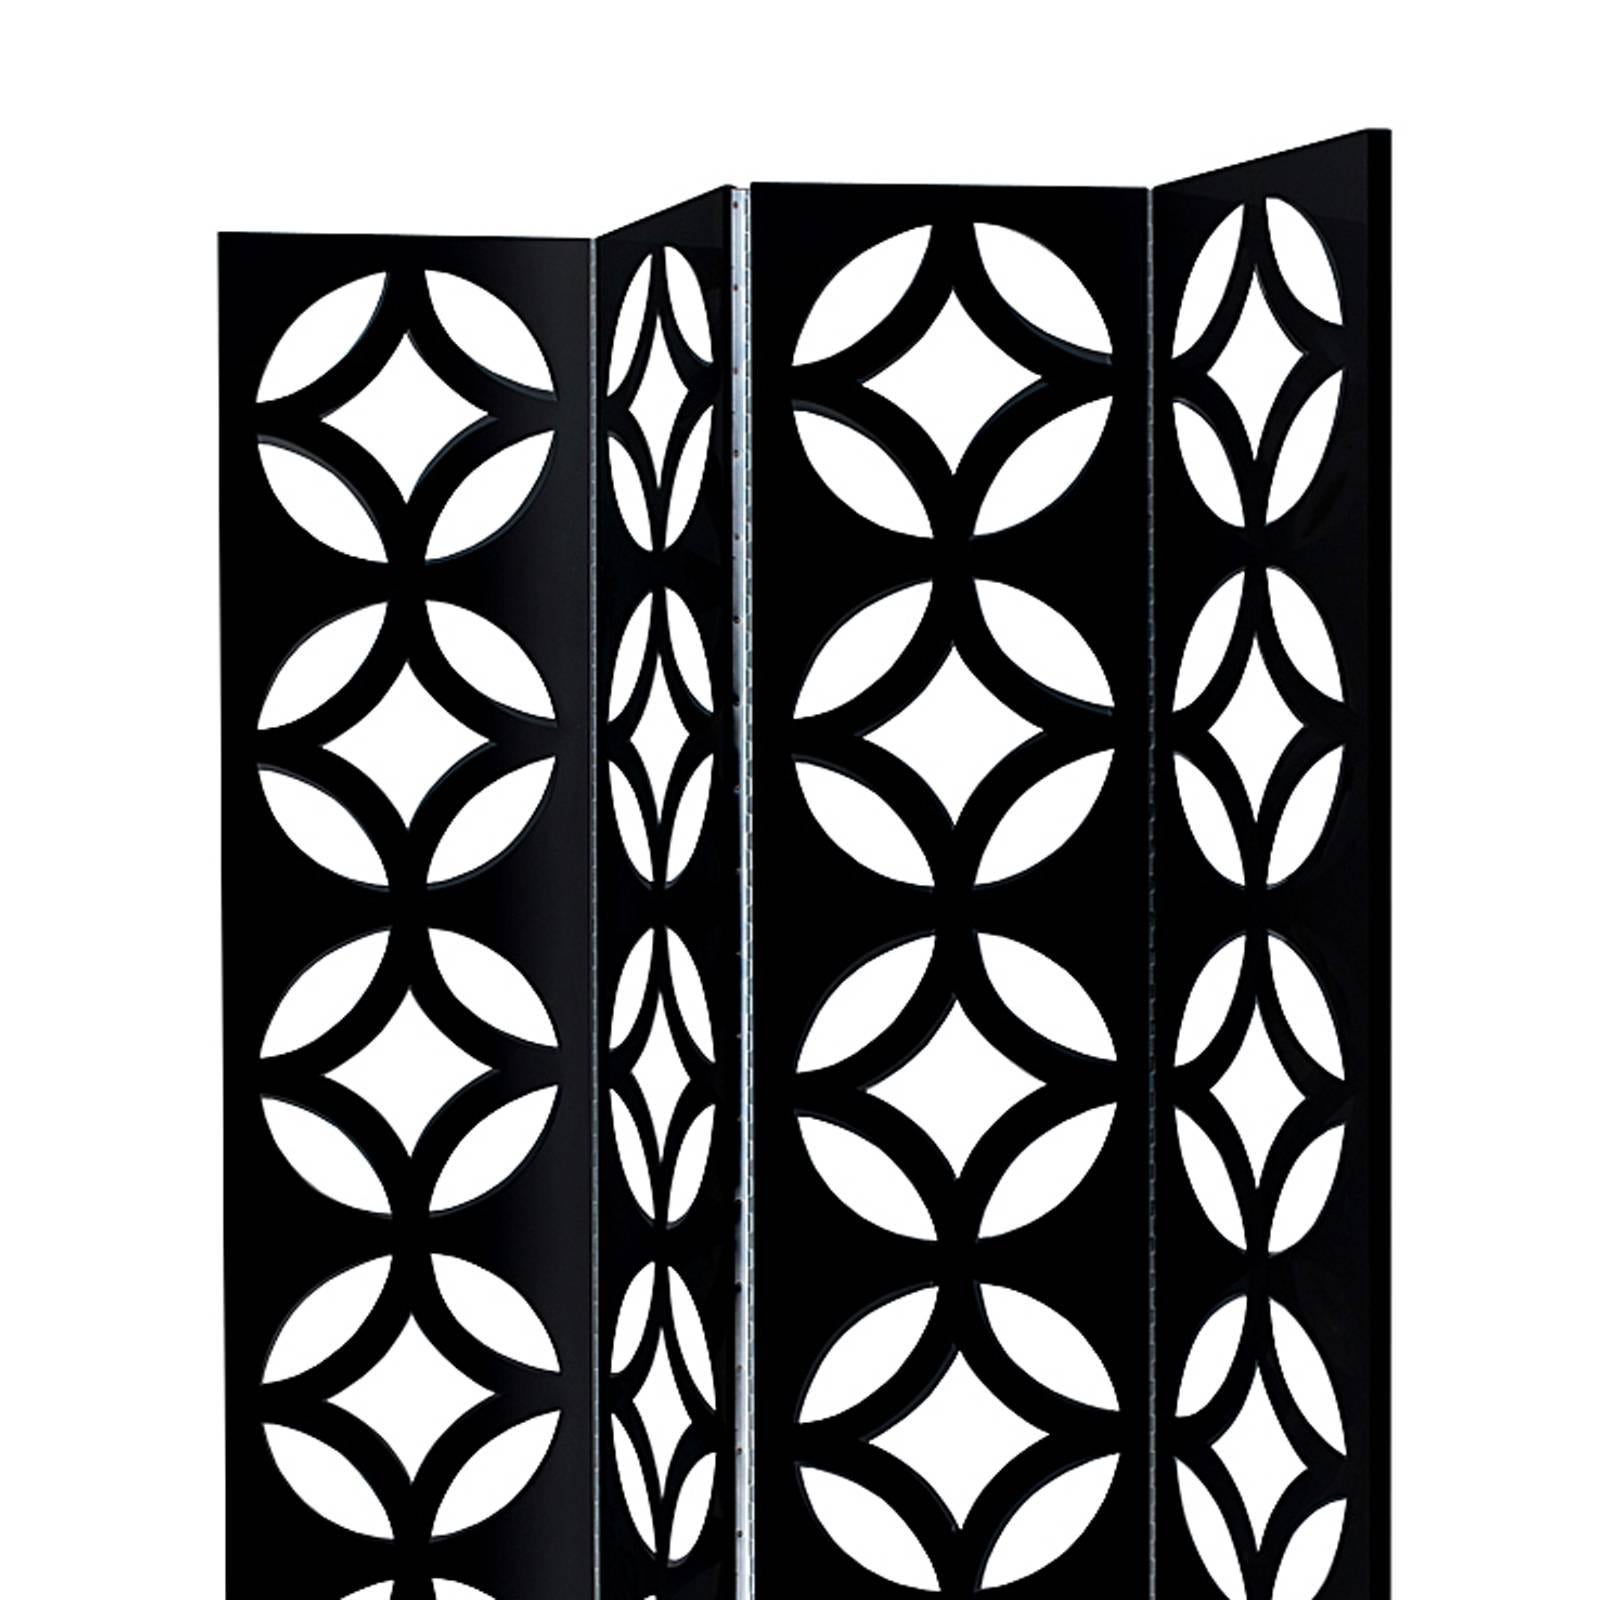 Foldes Diskus, mit schwarzem oder weißem Bildschirm
lackiertes Holz, Hochglanzoberfläche. Aufgeteilt in
drei Falttafeln. Scharniere aus vernickeltem Stahl.

 